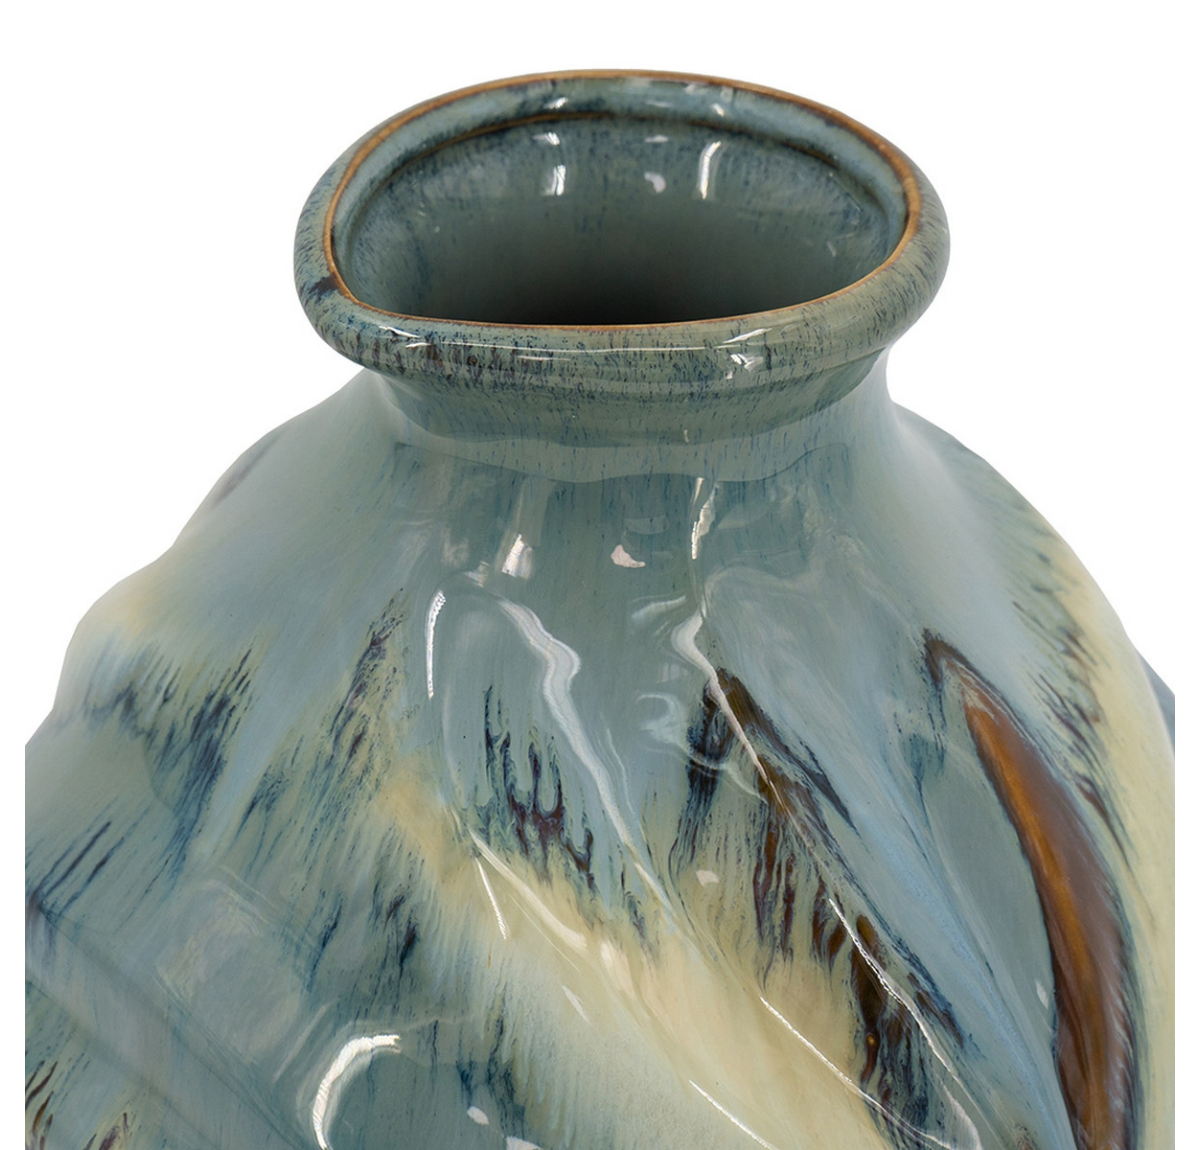 Ceramic Glazed Vase - Blue/White - 28cm tall